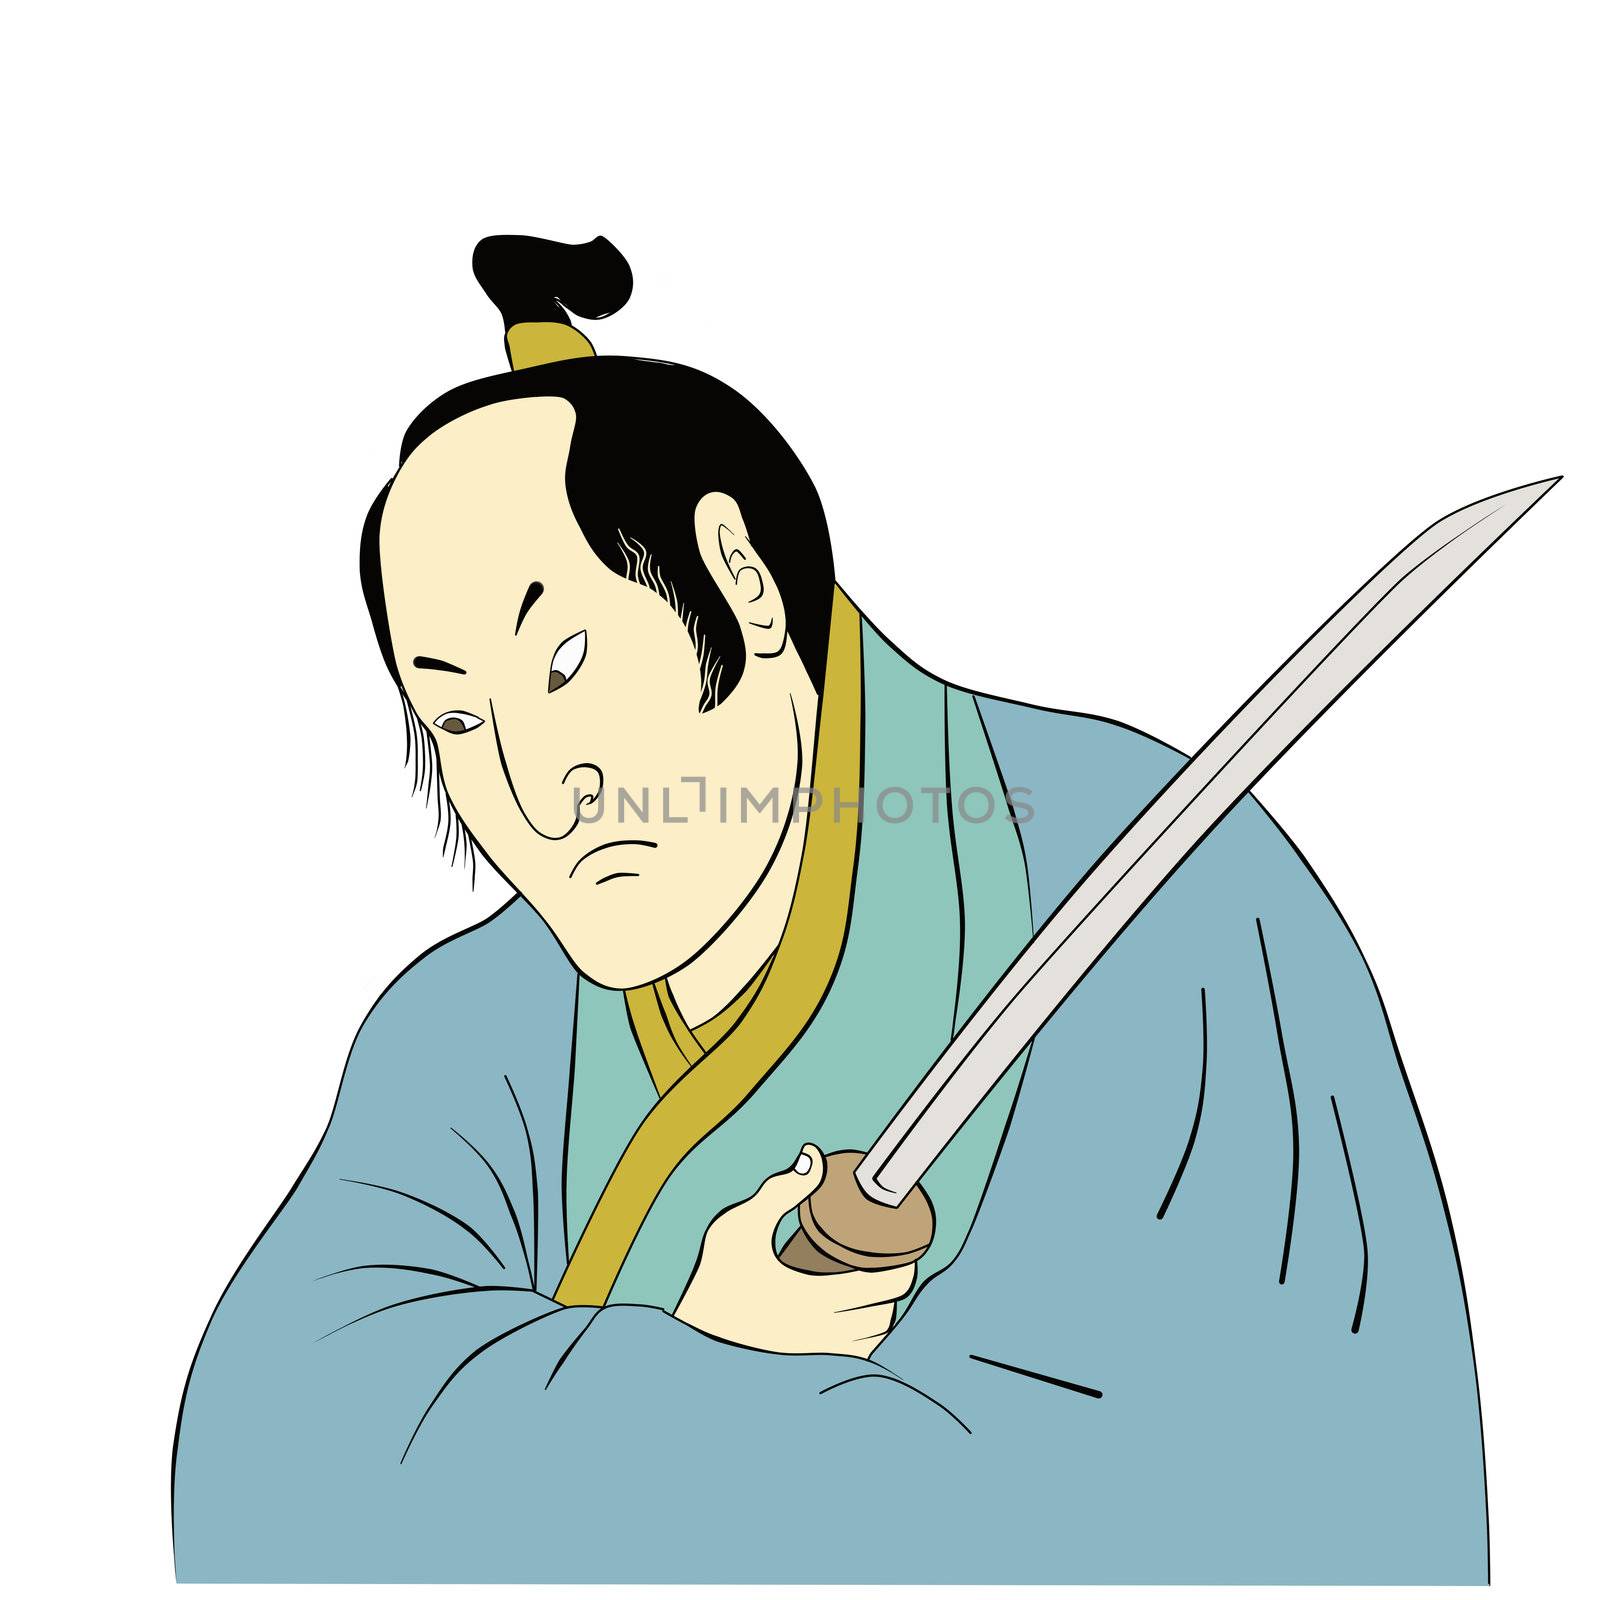 Samurai warrior with katana sword fighting stance by patrimonio